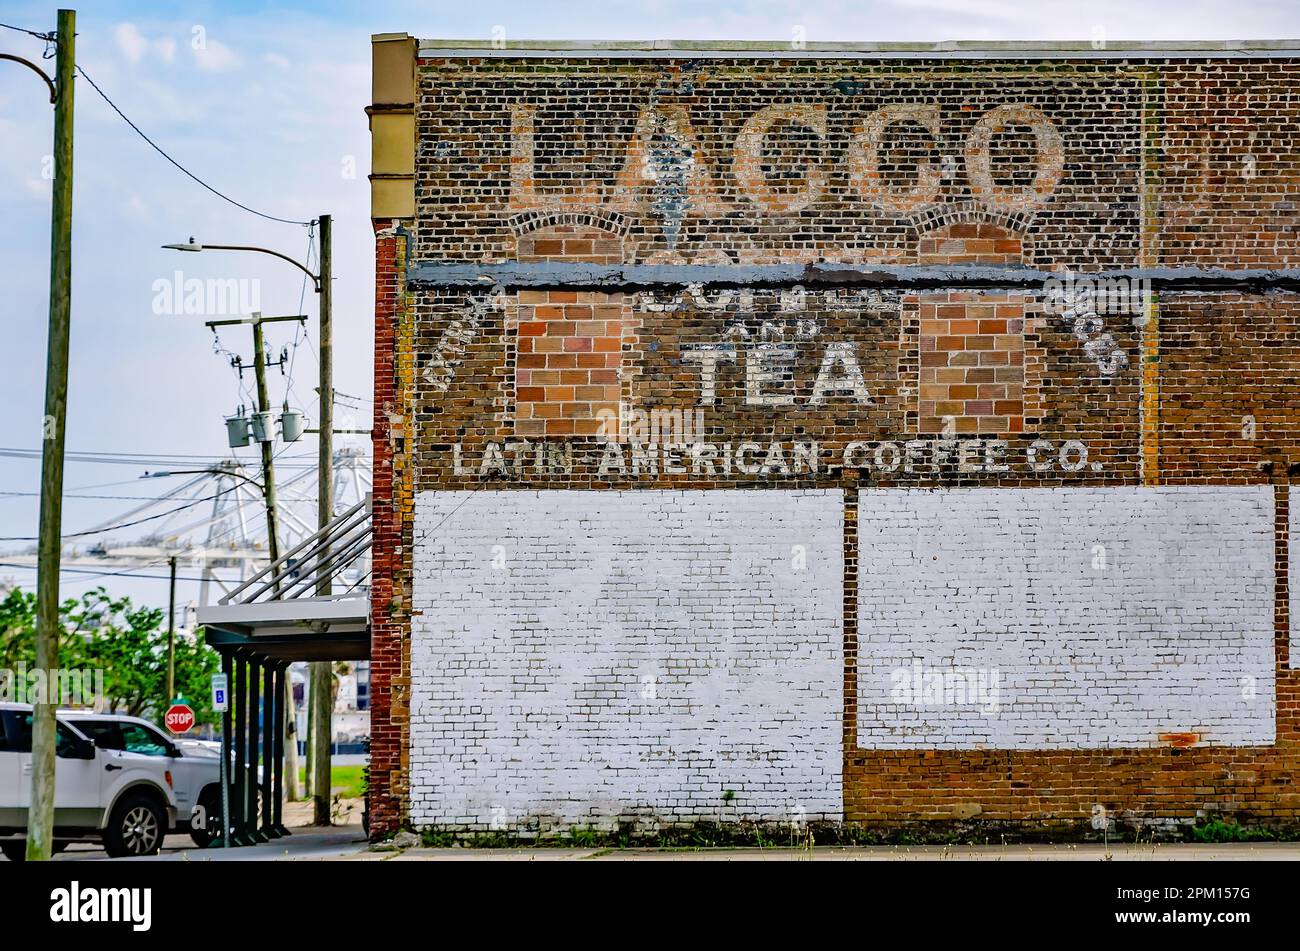 Am 2. April 2023 in Gulfport, Mississippi, befindet sich ein Geisterzeichen der Latin American Coffee Company auf einer Ziegelmauer. Stockfoto